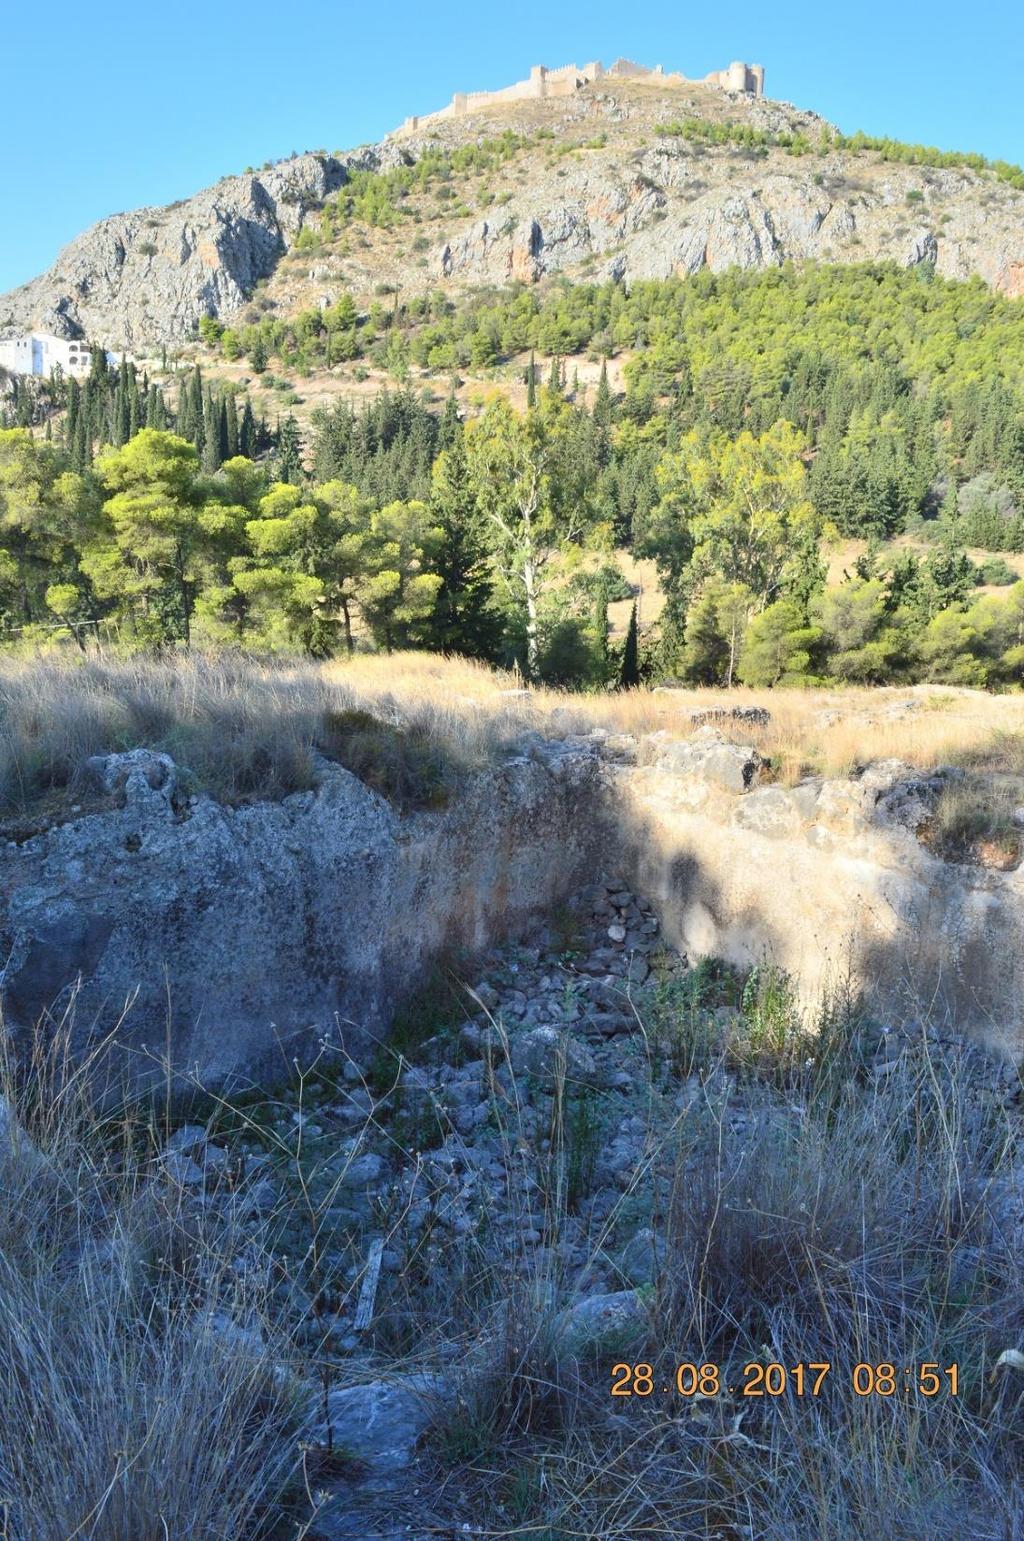 Στον λόφο του Προφήτη Ηλία ή Ασπίδας υπάρχουν δύο αρχαιολογικοί χώροι.